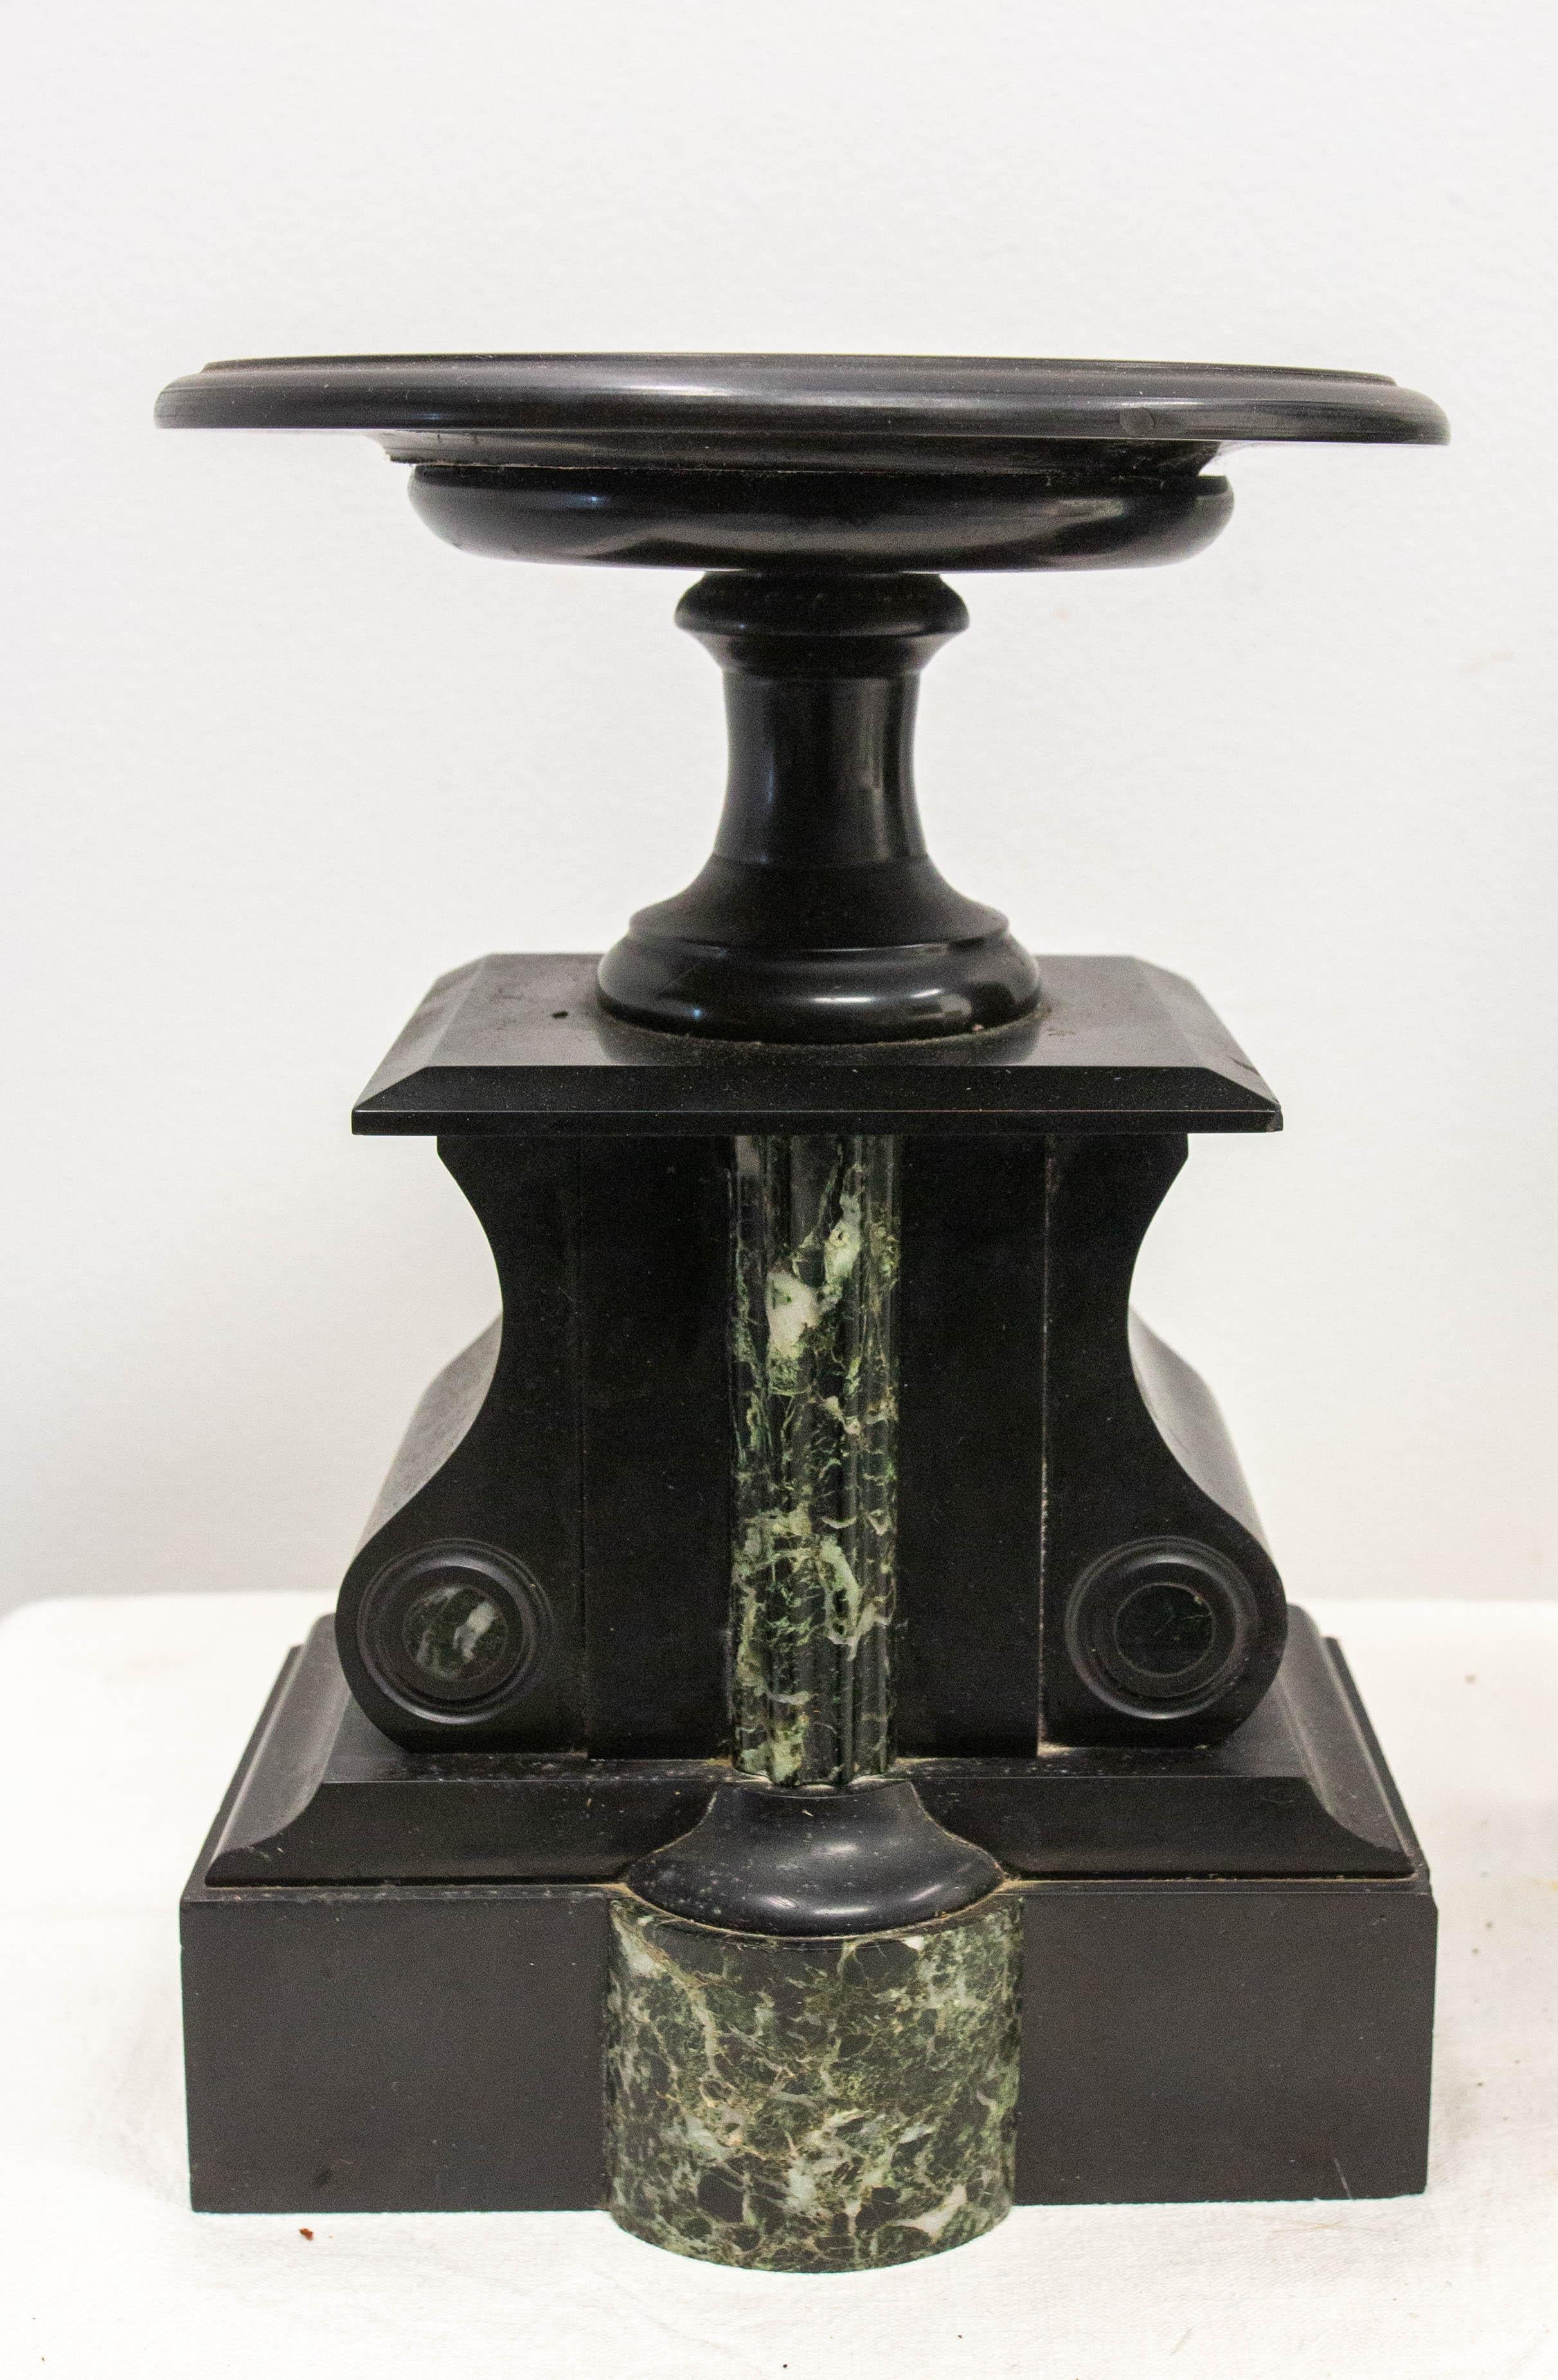 Pendule de cheminée Napoléon III française à deux marbres fin 19ème siècle circa 1890.
Ensemble composé d'une horloge et de deux socles.
Pendule à mercure 

Le mouvement français de l'horloge sera vérifié avant l'expédition.
En bon état avec des